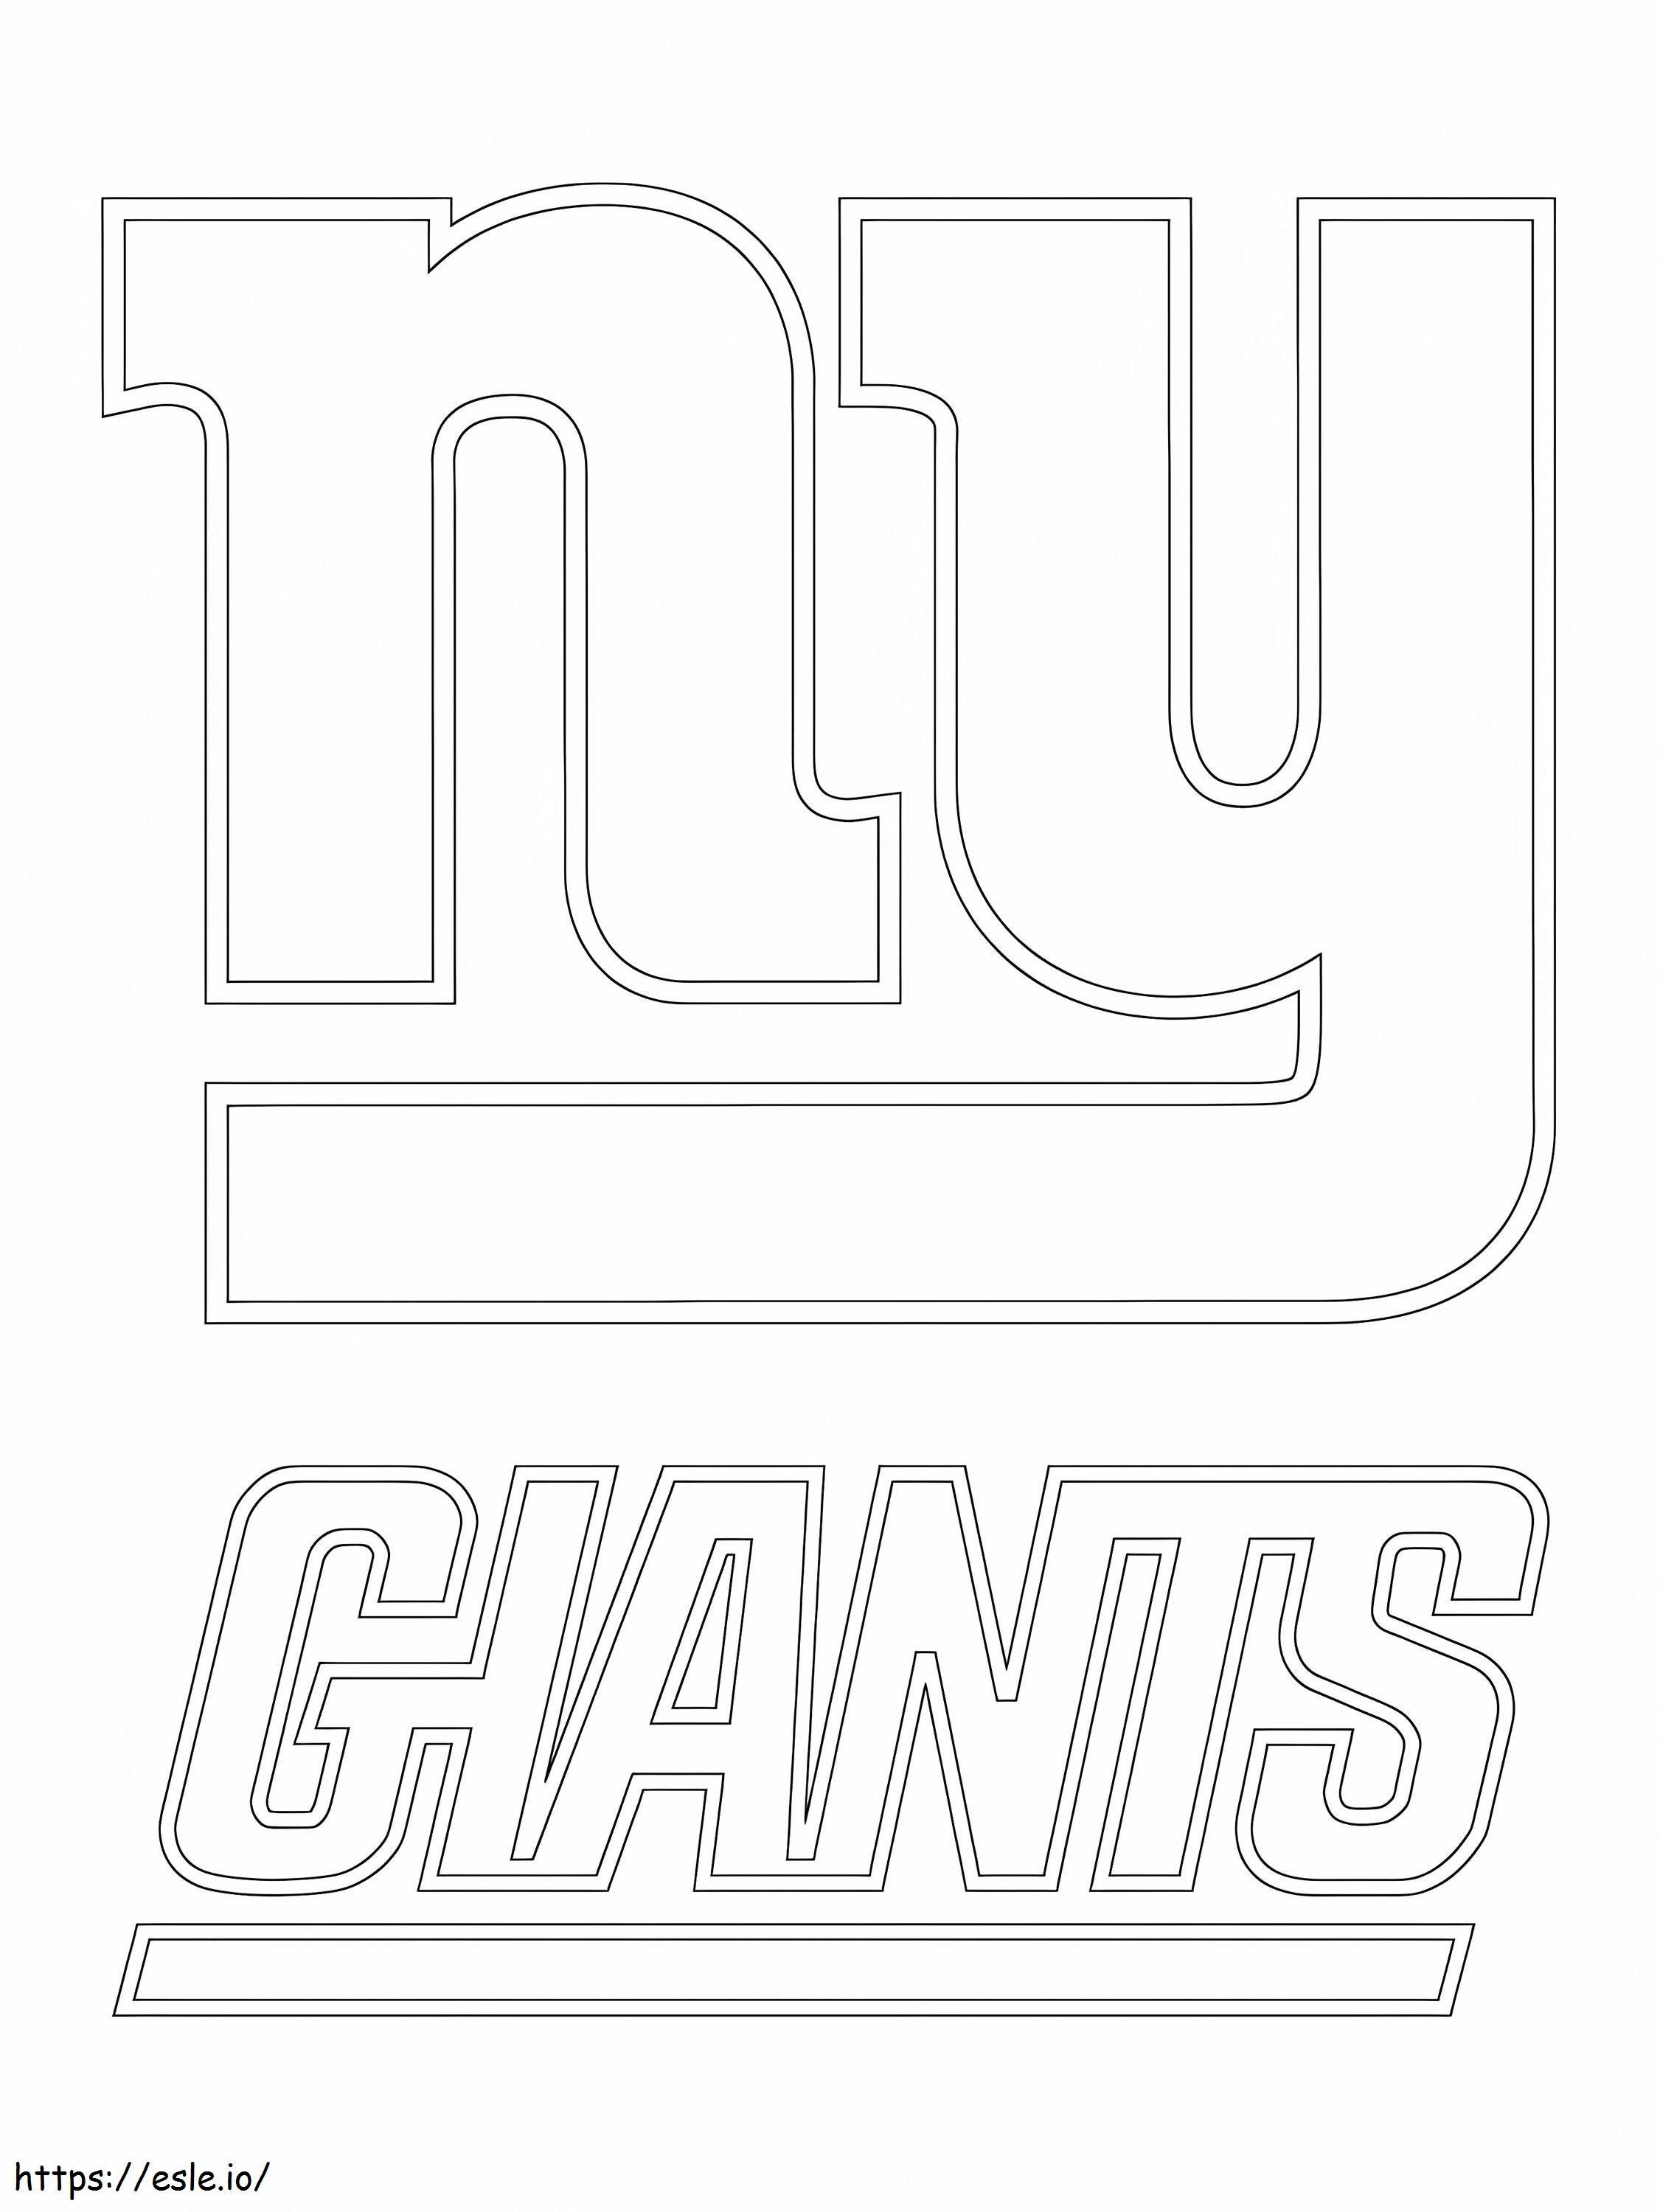 Logo dei New York Giants da colorare